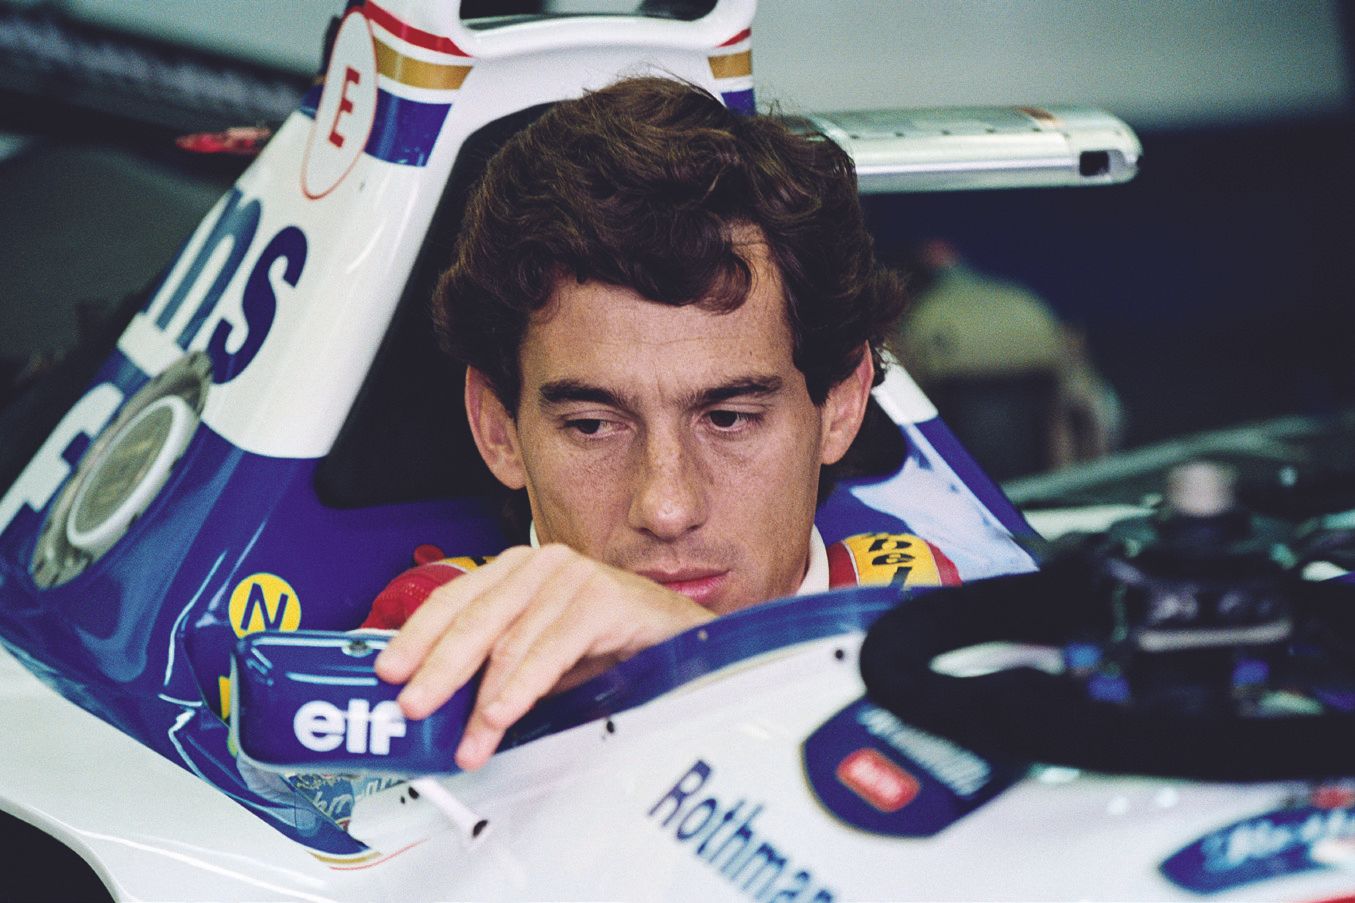 AFP - Jean-Loup GAUTREAU 法新社 - Jean-Loup GAUTREAU

1994年5月1日，艾尔顿-塞纳在圣马力诺大奖赛开始前，在&hellip;